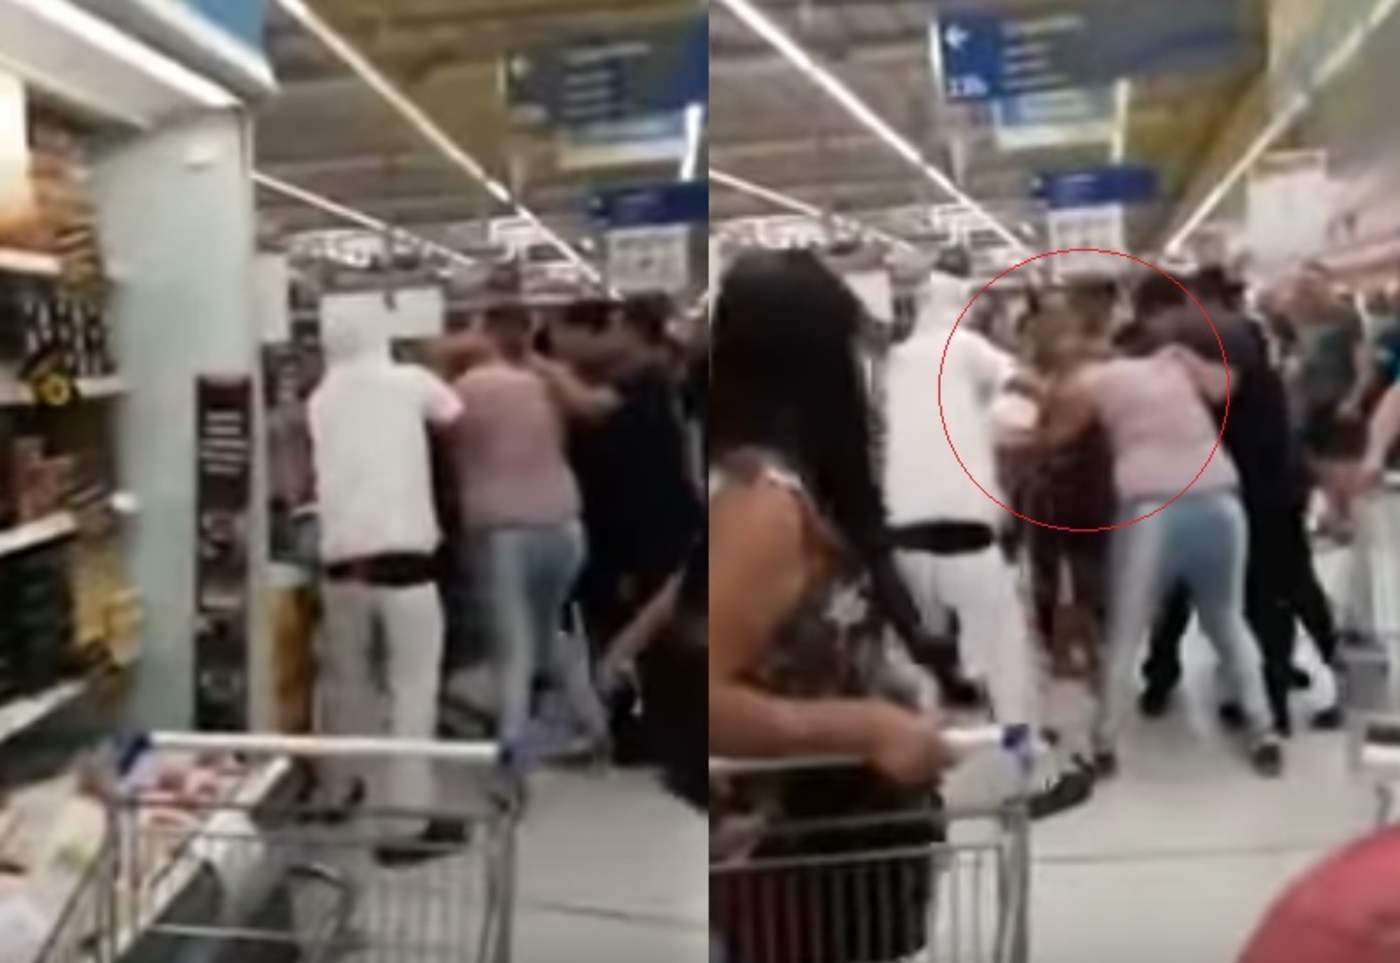 Mujeres protagonizan pelea por una milanesa en supermercado